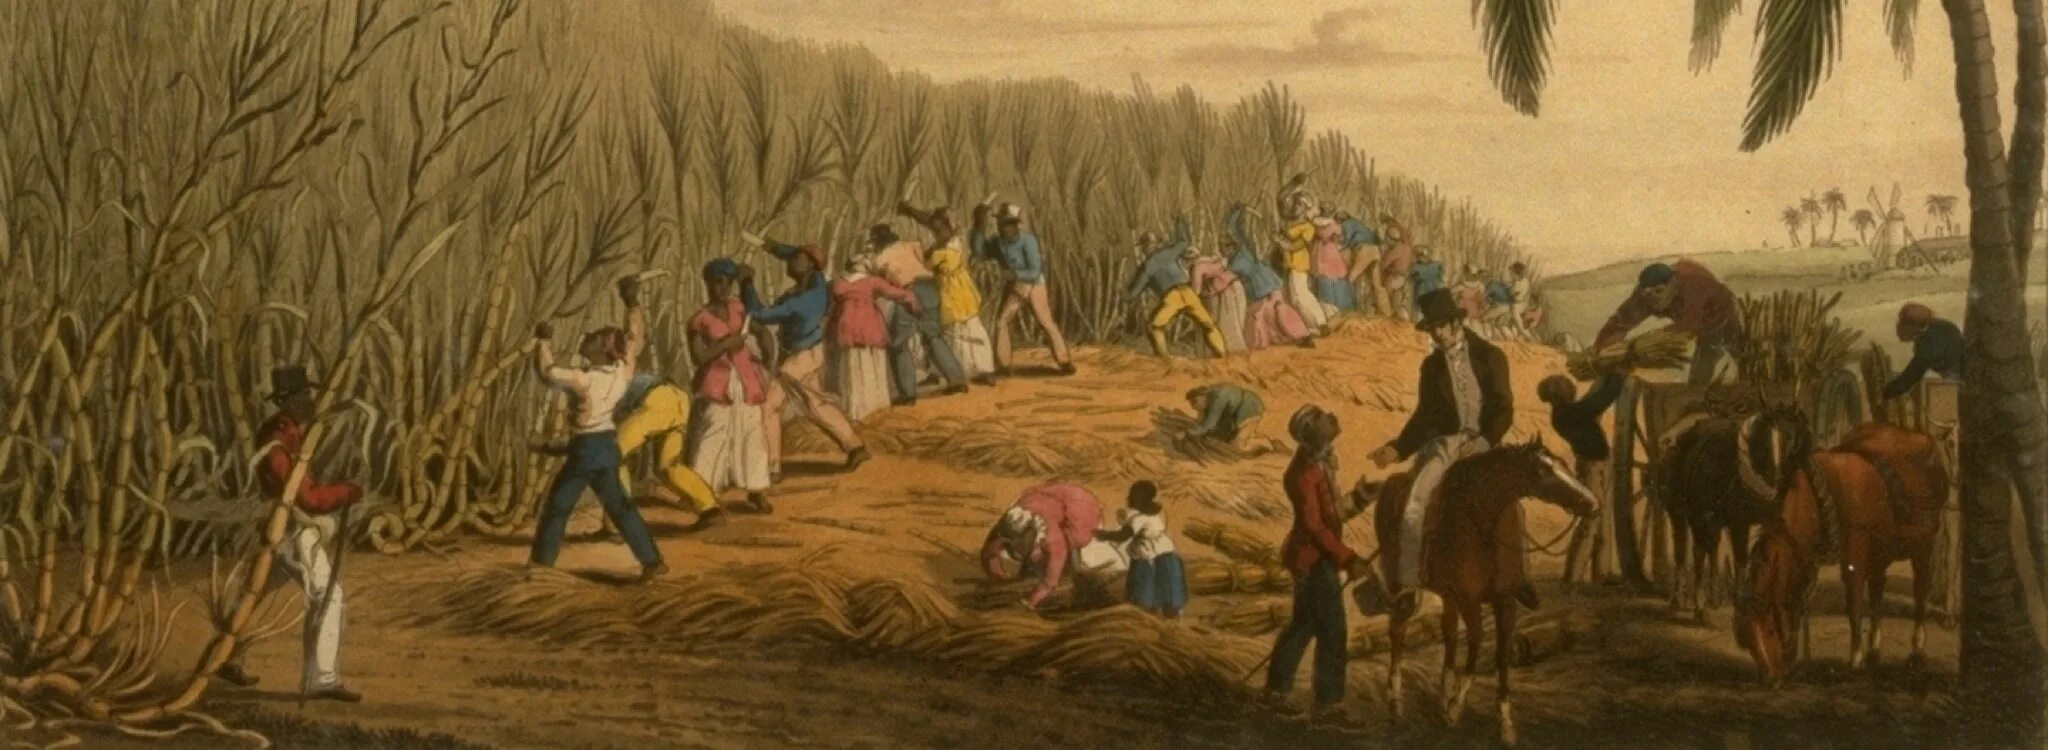 История чернокожих. Плантации сахарного тростника 19 век. Работорговля Англия 18 век. Рабство в США 19 век на плантациях хлопка. Рабы на плантациях.